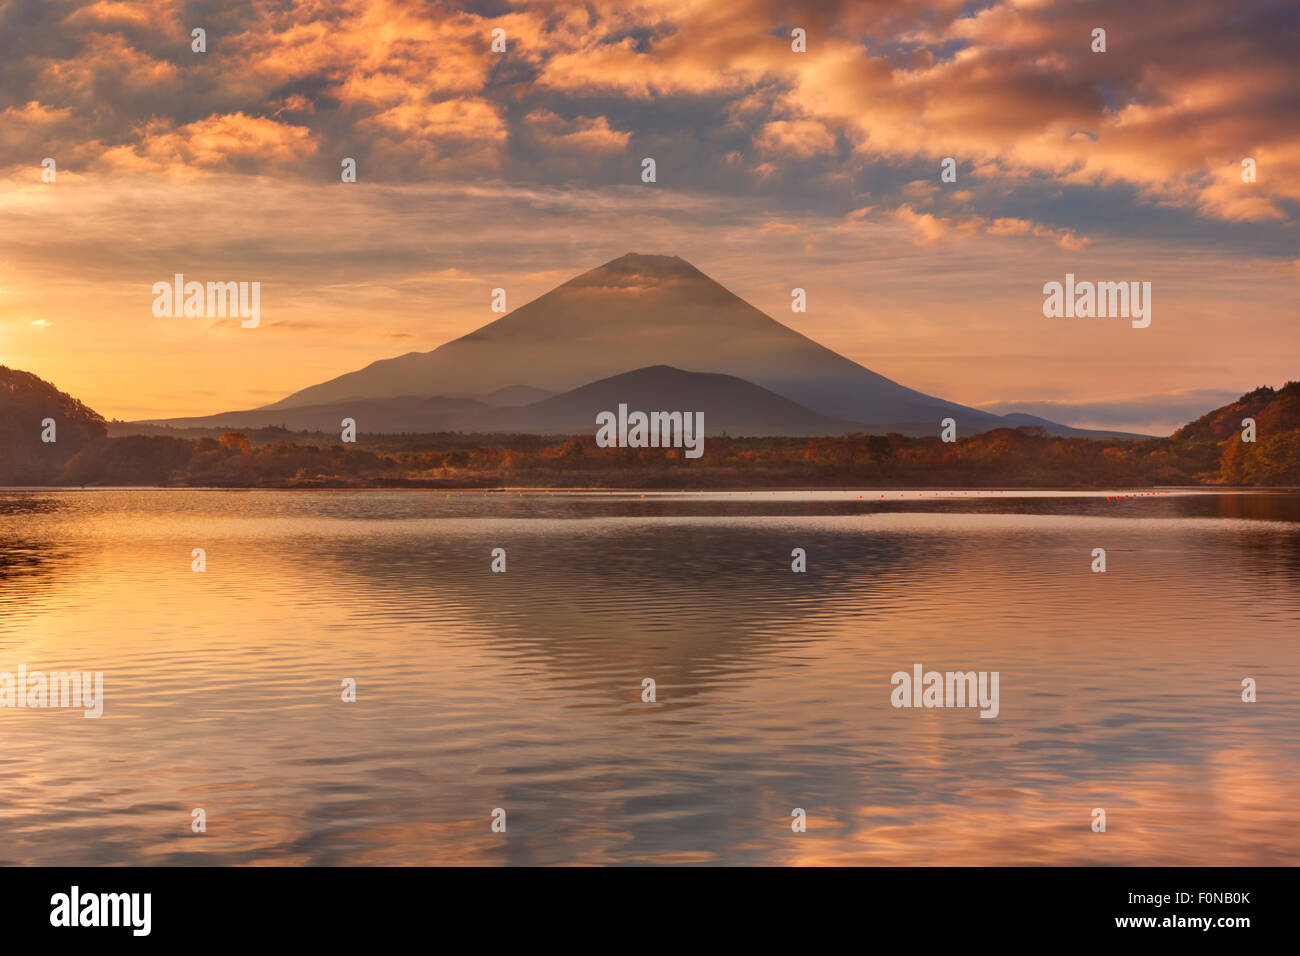 Le Mont Fuji (富士山 Fujisan,) photographié au lever du soleil depuis le lac Shoji (Shojiko, 精進湖). Banque D'Images